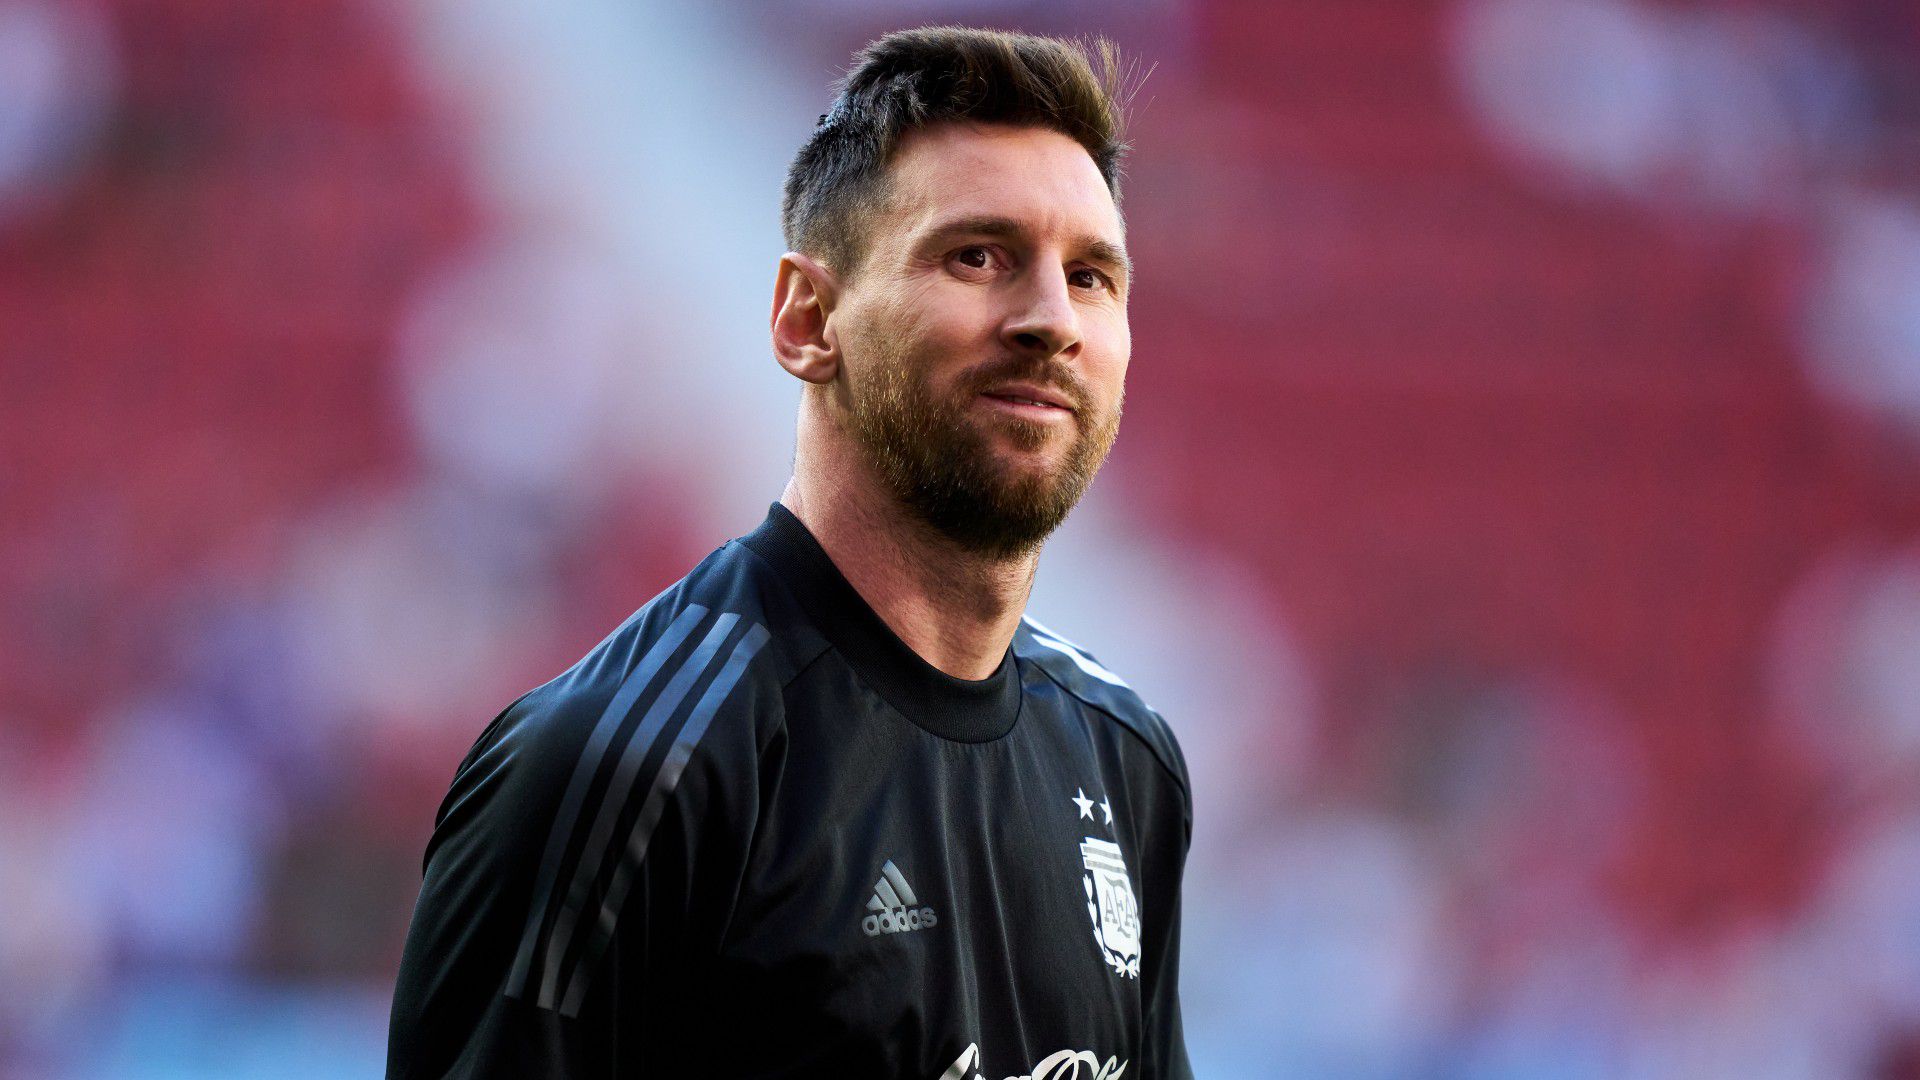 VIDEÓ: Messi sérülést imitálva ijesztett rá csapattársaira